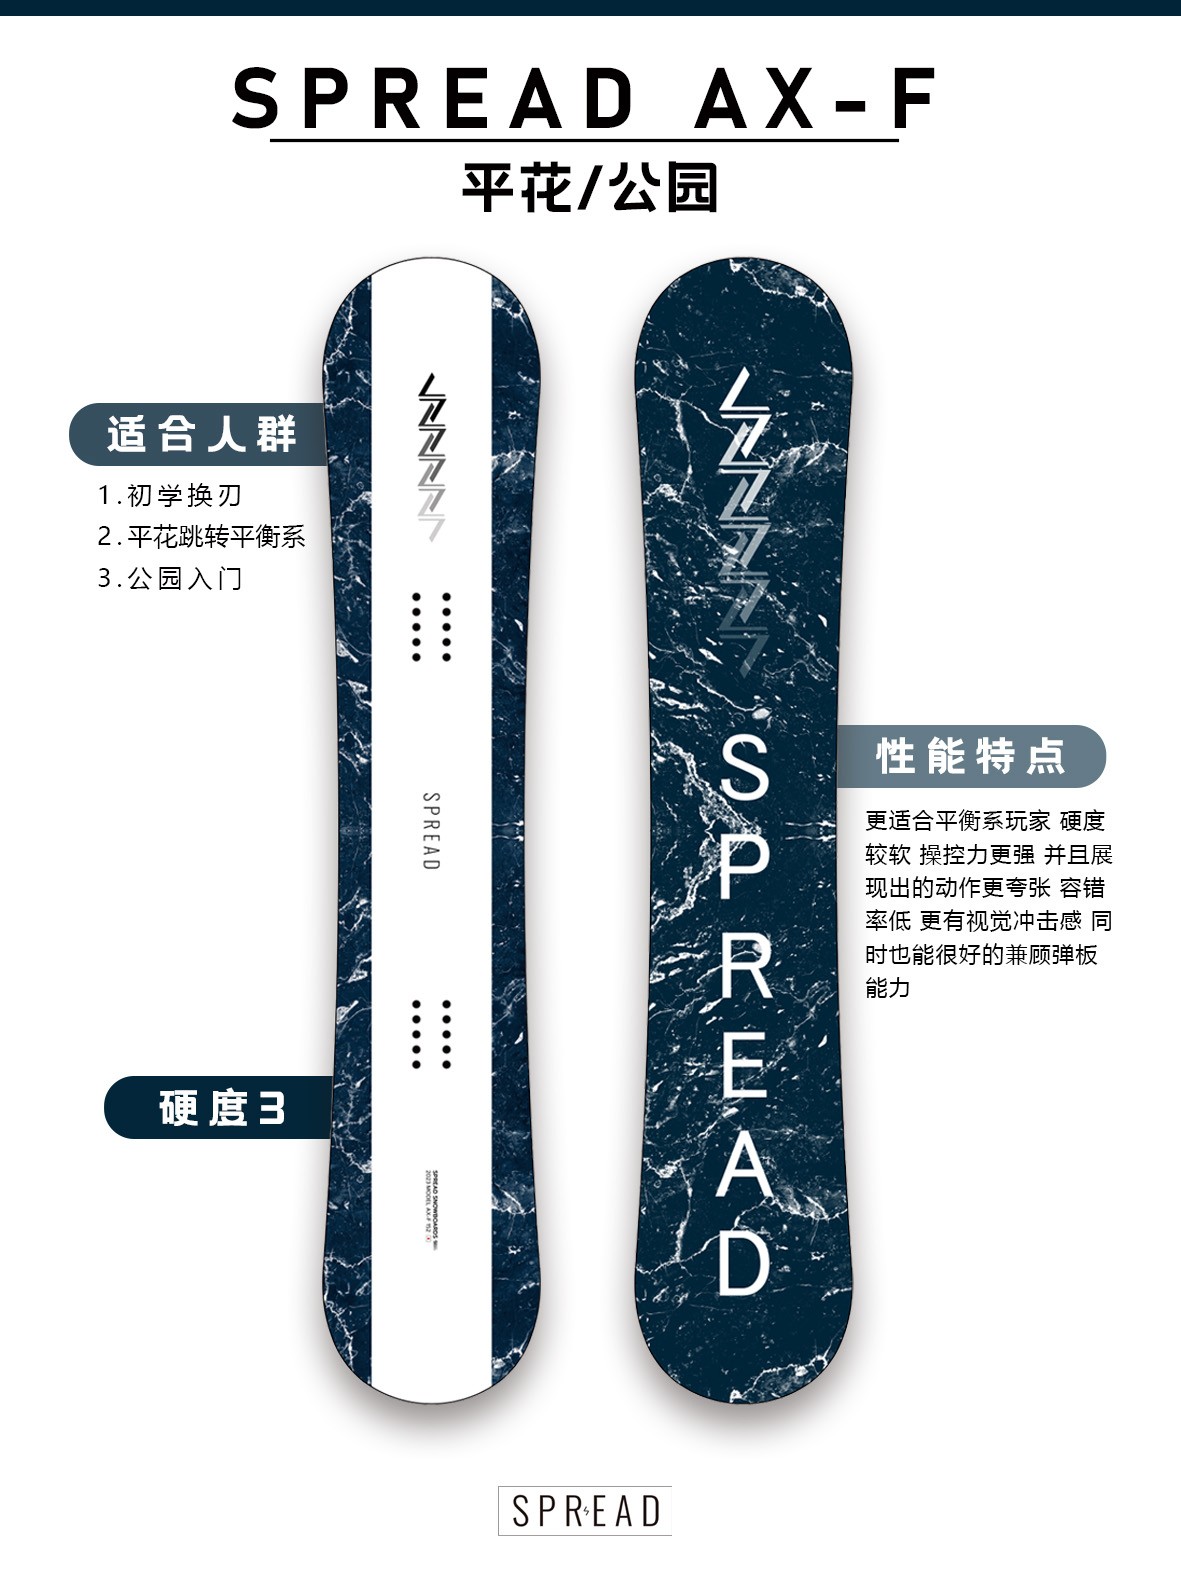 24新款SPREAD日本进口男款平花板AXF全能滑雪板LTAF - 图2